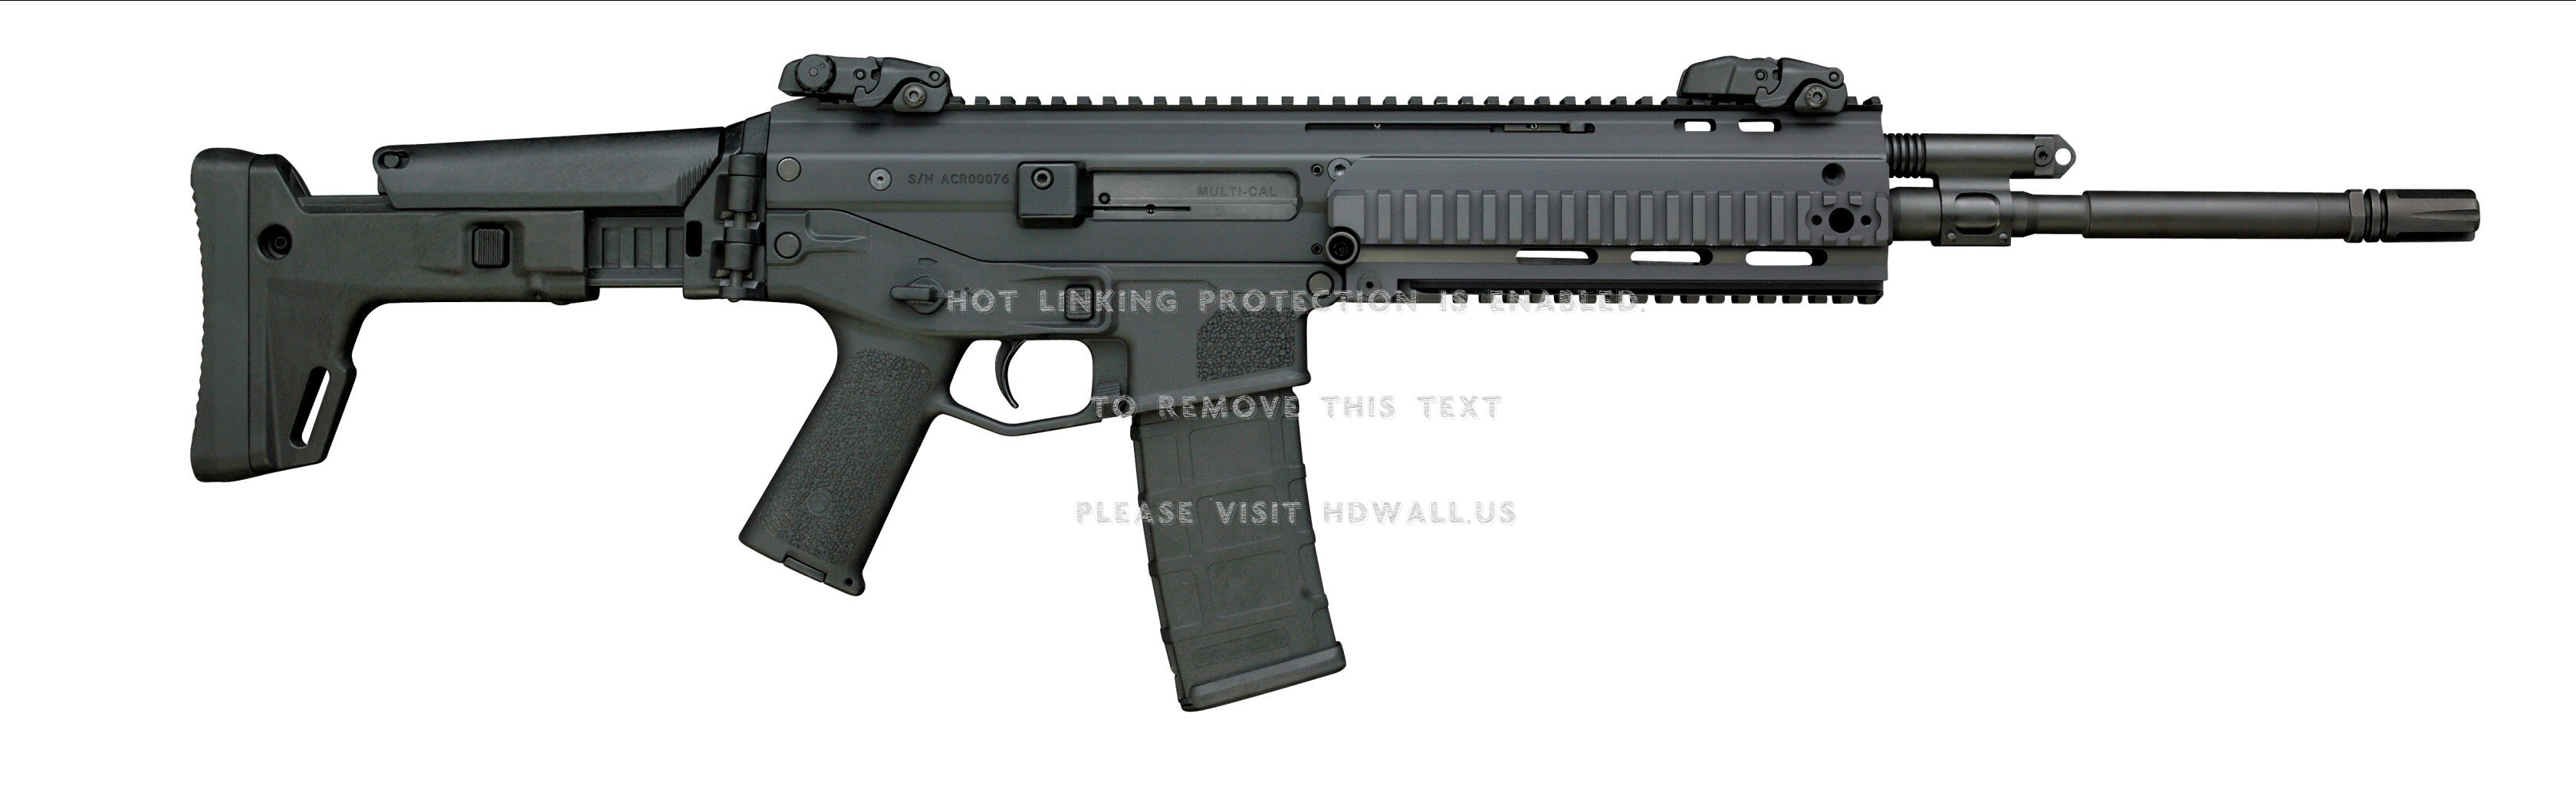 gun 315 wallpaper,firearm,gun,trigger,rifle,assault rifle